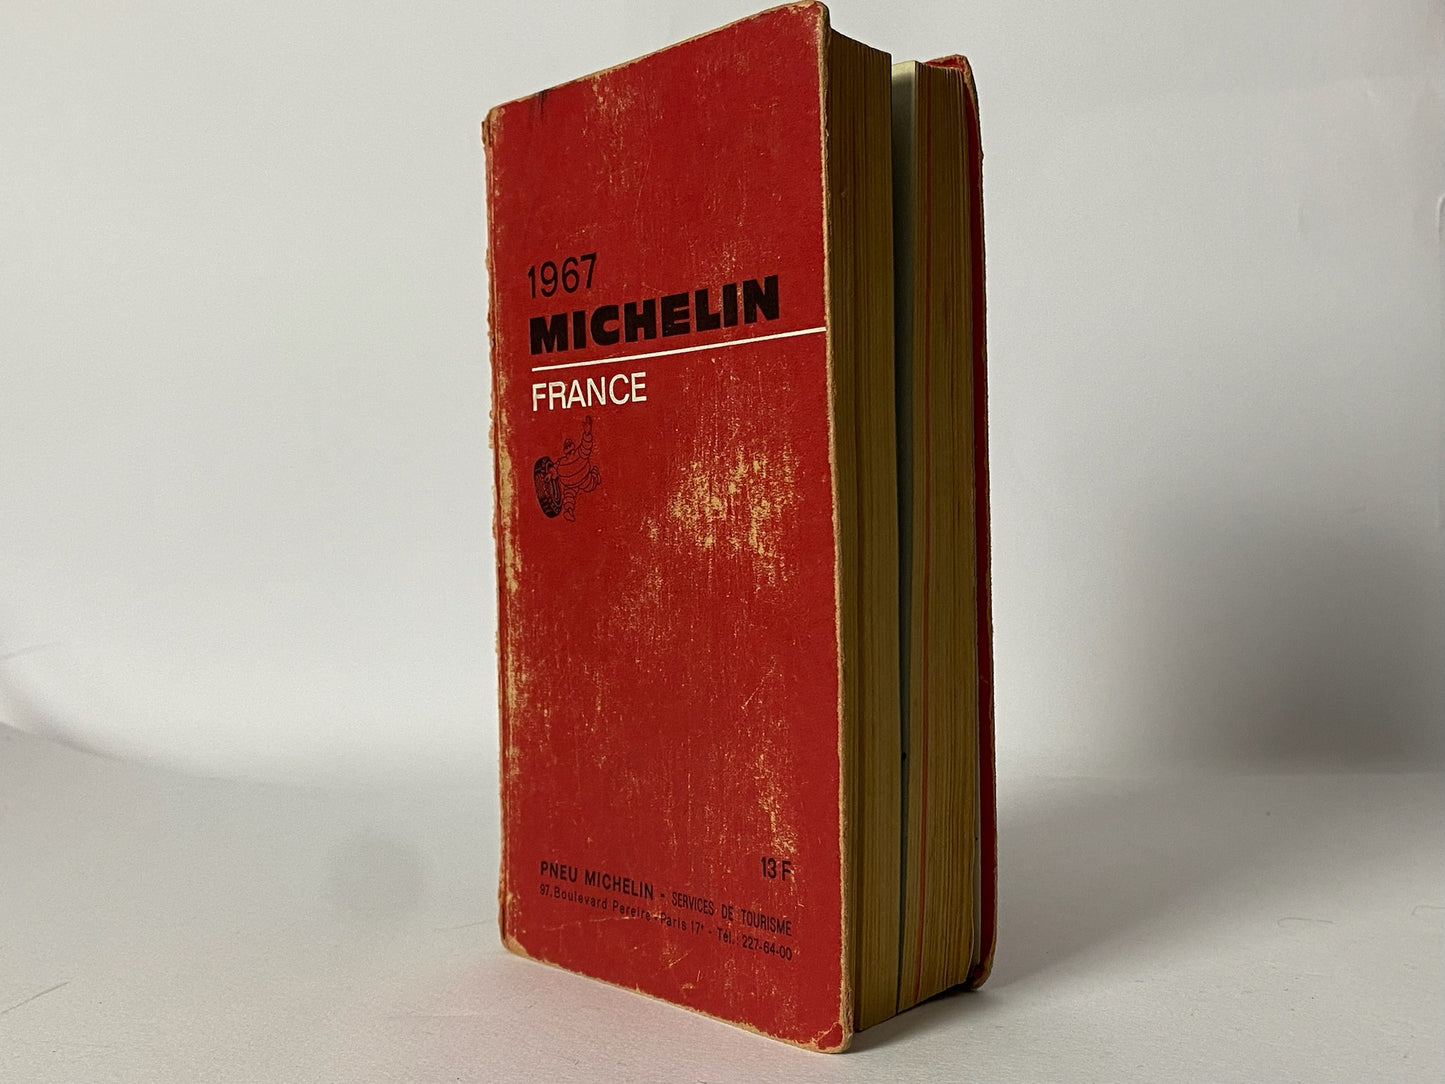 Michelin, Guida Michelin Anno 1967 Francia - Raggi's Collectibles' Automotive Art